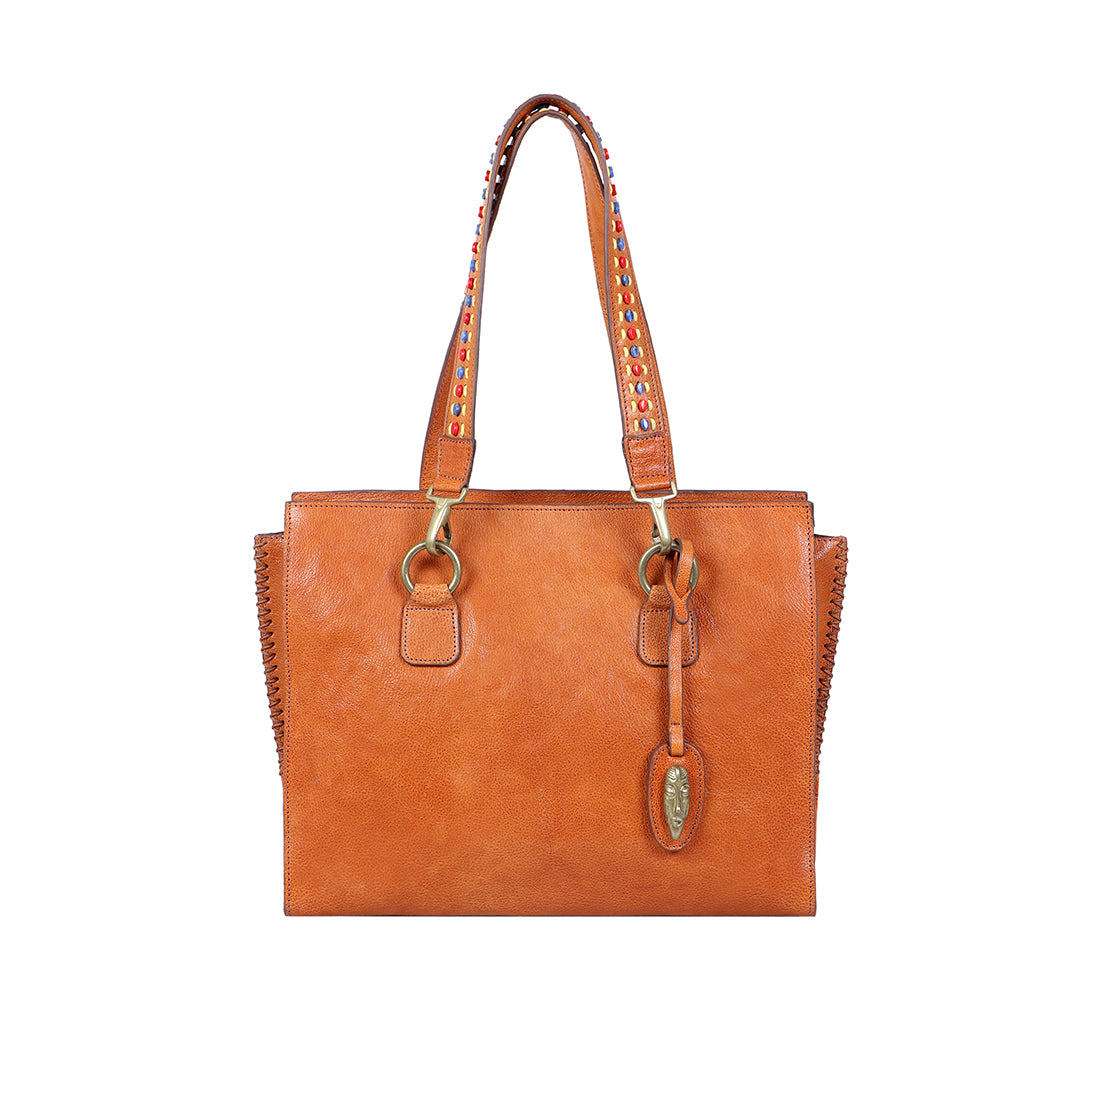 Buy Blue Swala 04 Sling Bag Online - Hidesign